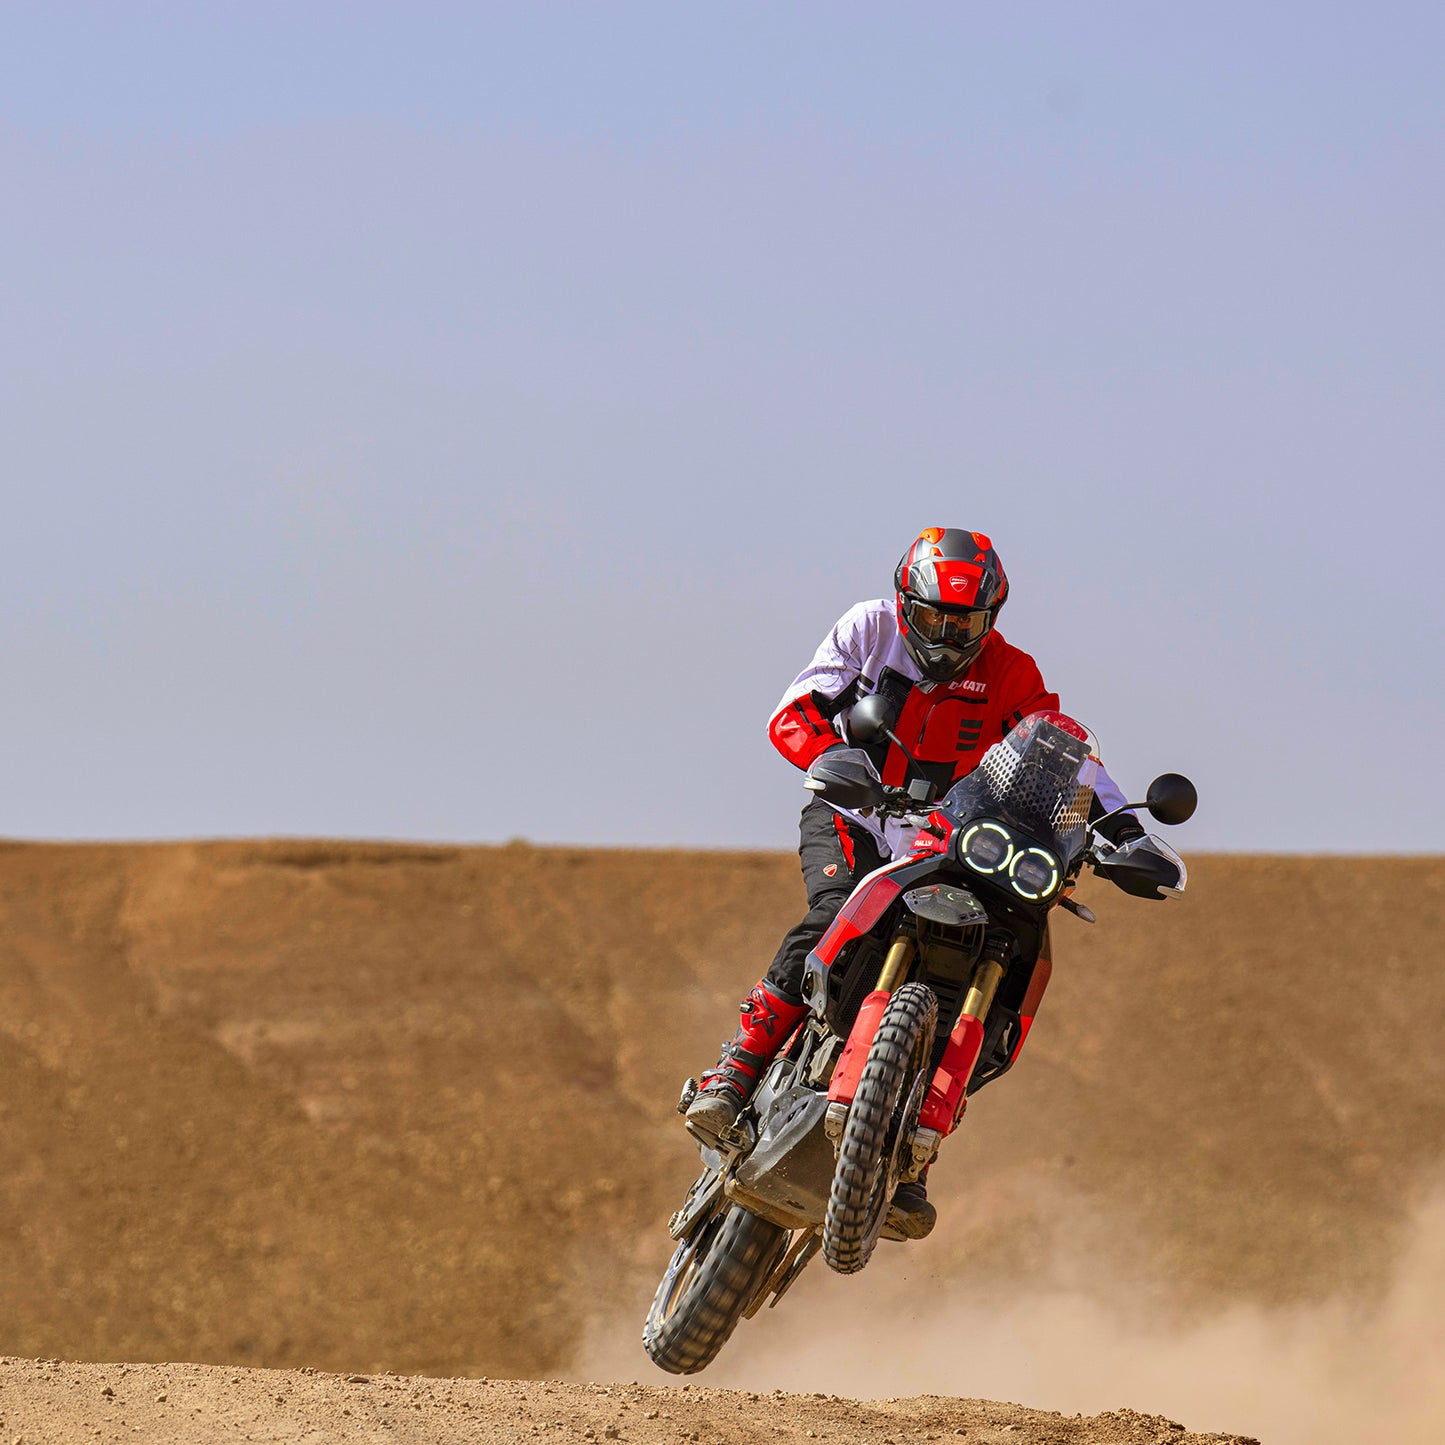 Ducati DesertX Rally Pre-Order